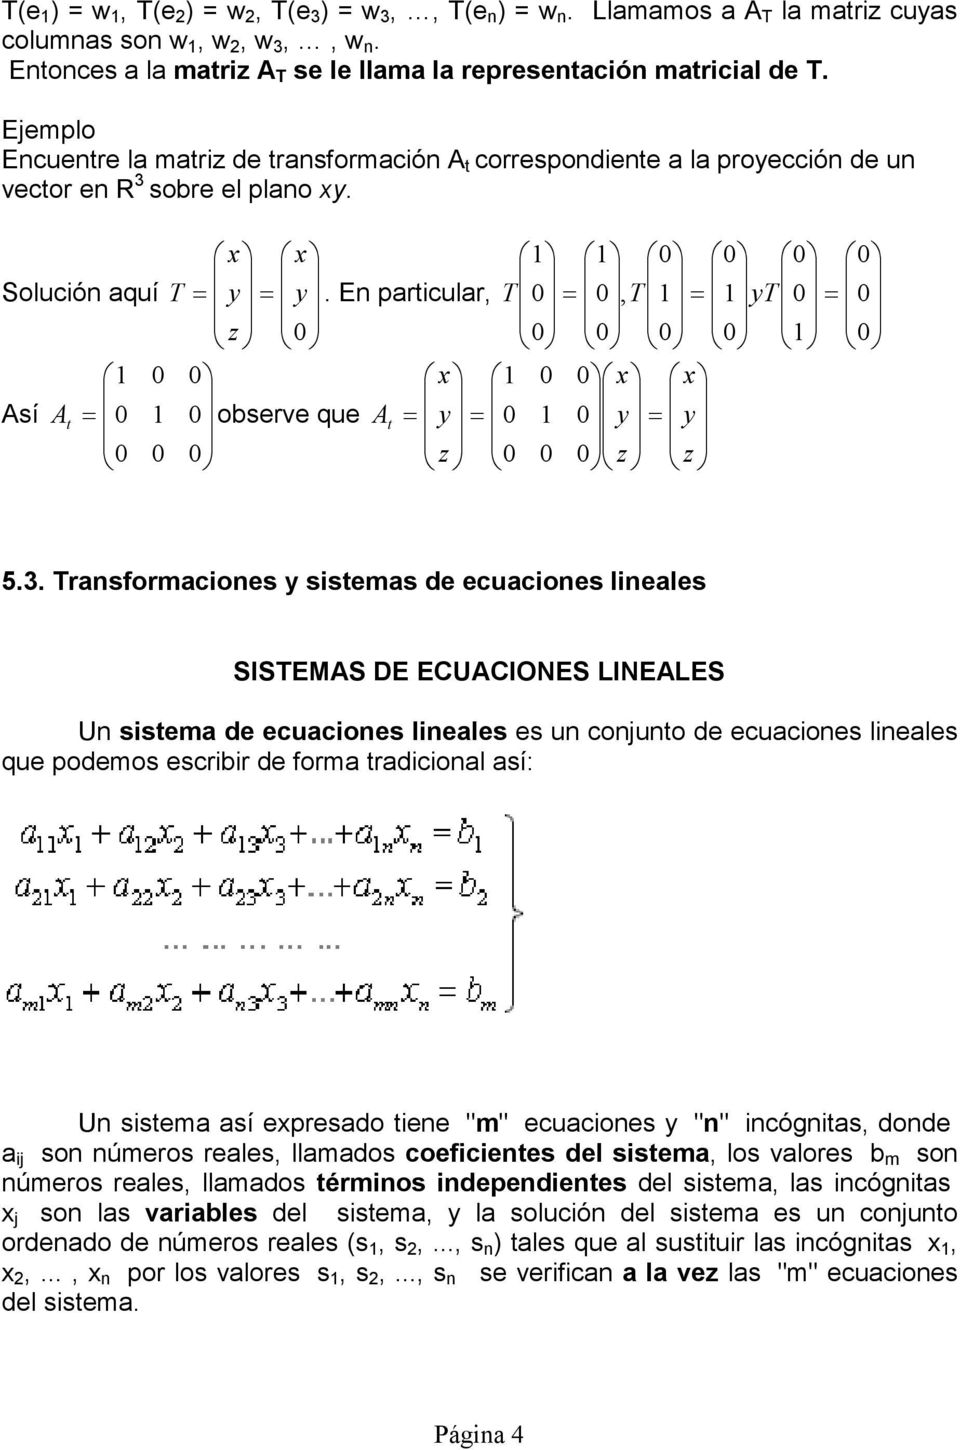 SISEMAS DE ECUACIONES LINEALES Un sistema de ecuaciones lineales es un conjunto de ecuaciones lineales que podemos escribir de forma tradicional así: Un sistema así epresado tiene "m" ecuaciones "n"